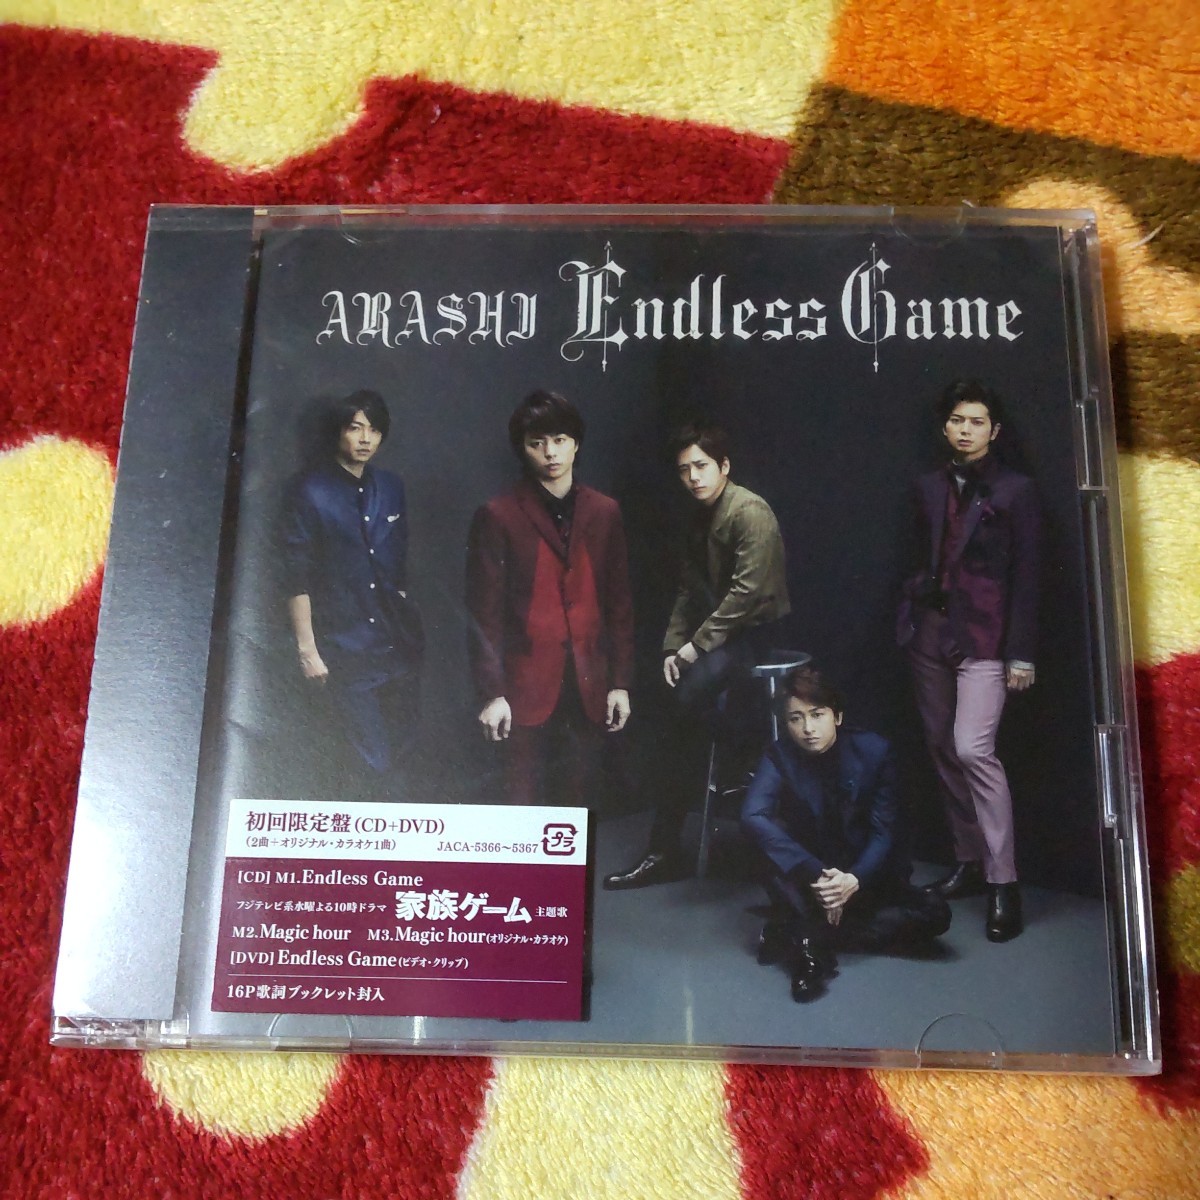 【新品未開封】嵐 ARASHI Endless Game CD+DVD 初回限定盤_画像1